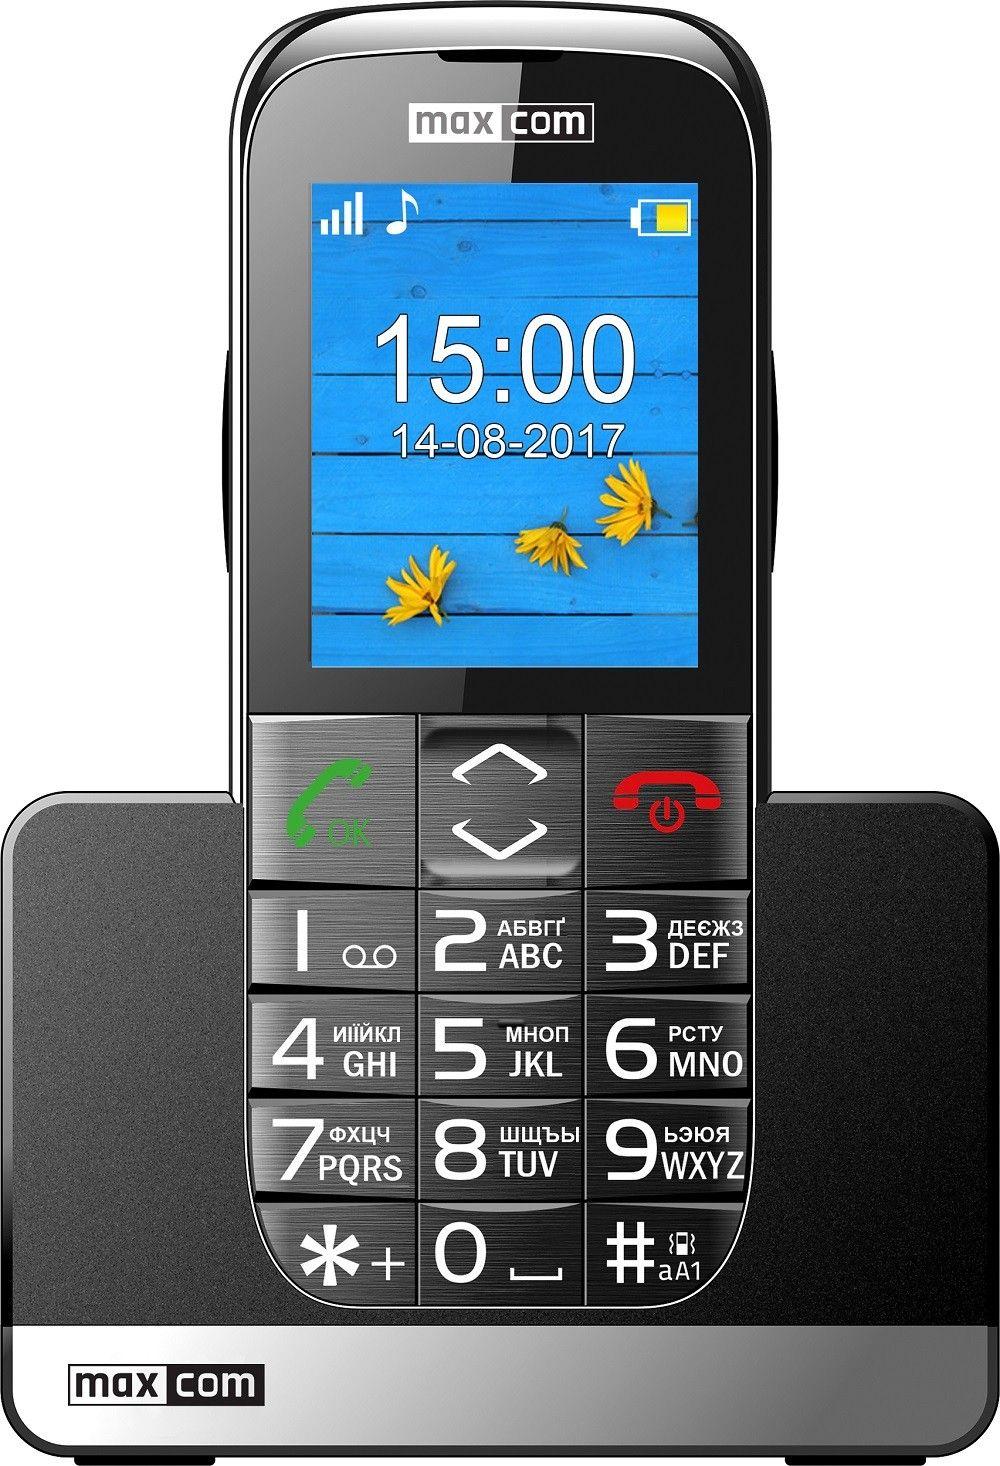 Telefon Maxcom Comfort MM720 UA z ukraińskim językiem i klawiaturą